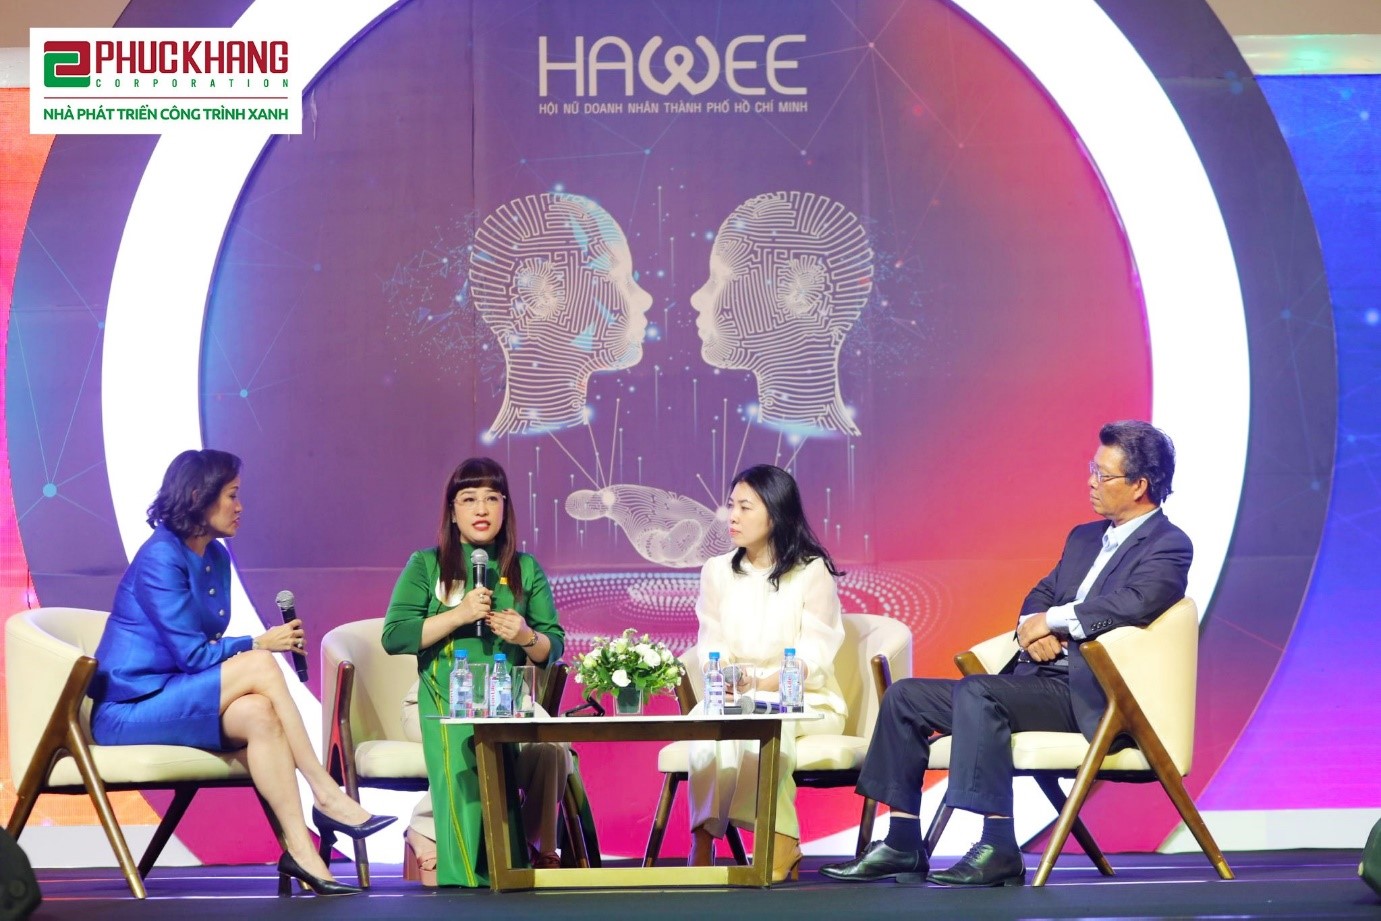 CEO Phuc Khang Corporation - Bà Lưu Thị Thanh Mẫu (áo dài xanh, thứ 2 từ trái qua) chia sẻ tại diễn đàn Hawee Leaders Forum 22